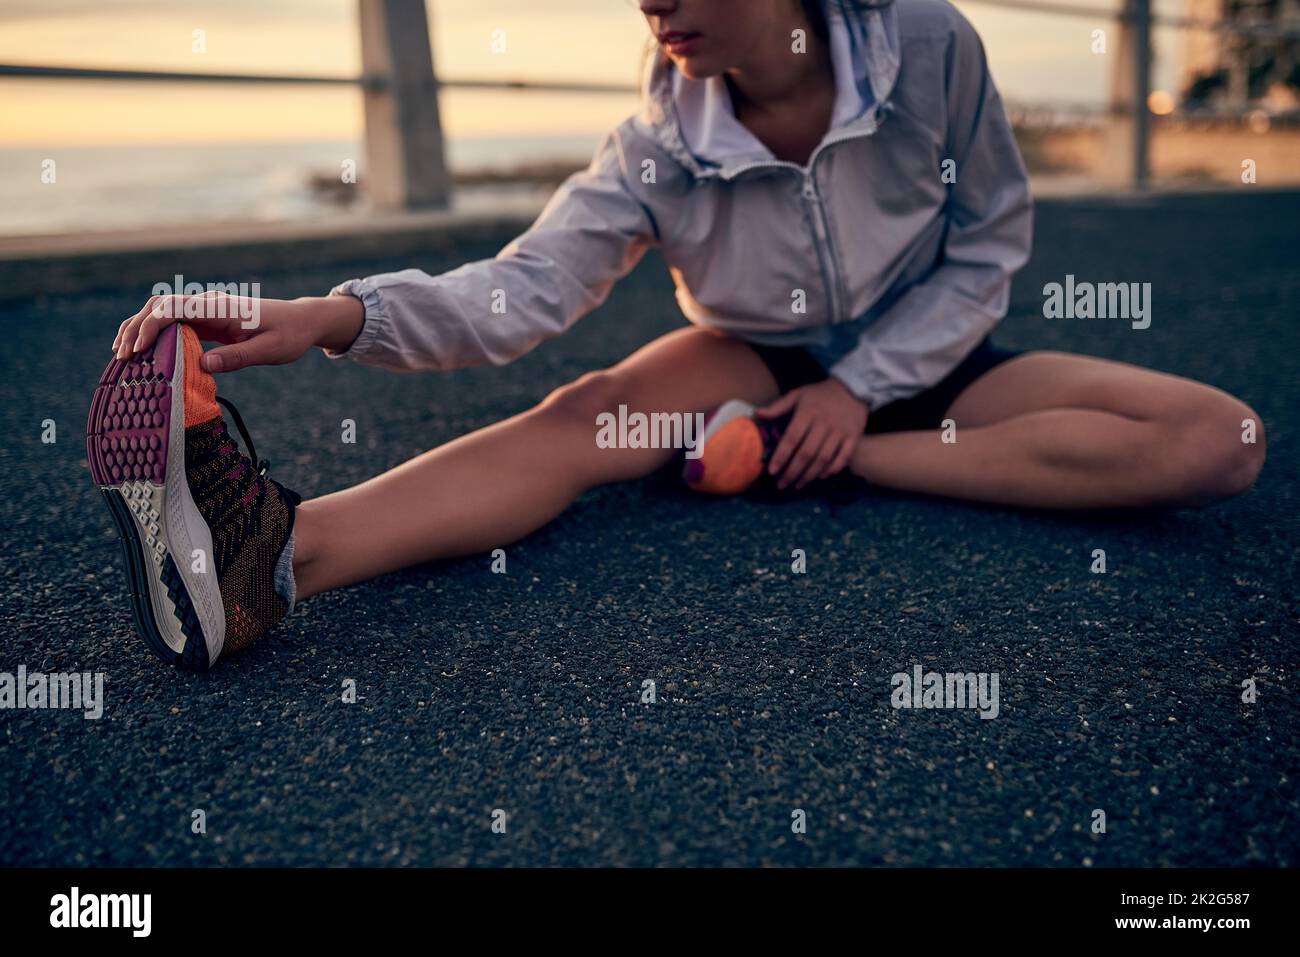 USA il tuo tempo libero saggiamente. Scatto di una giovane donna sportiva che si allunga prima della sua corsa. Foto Stock